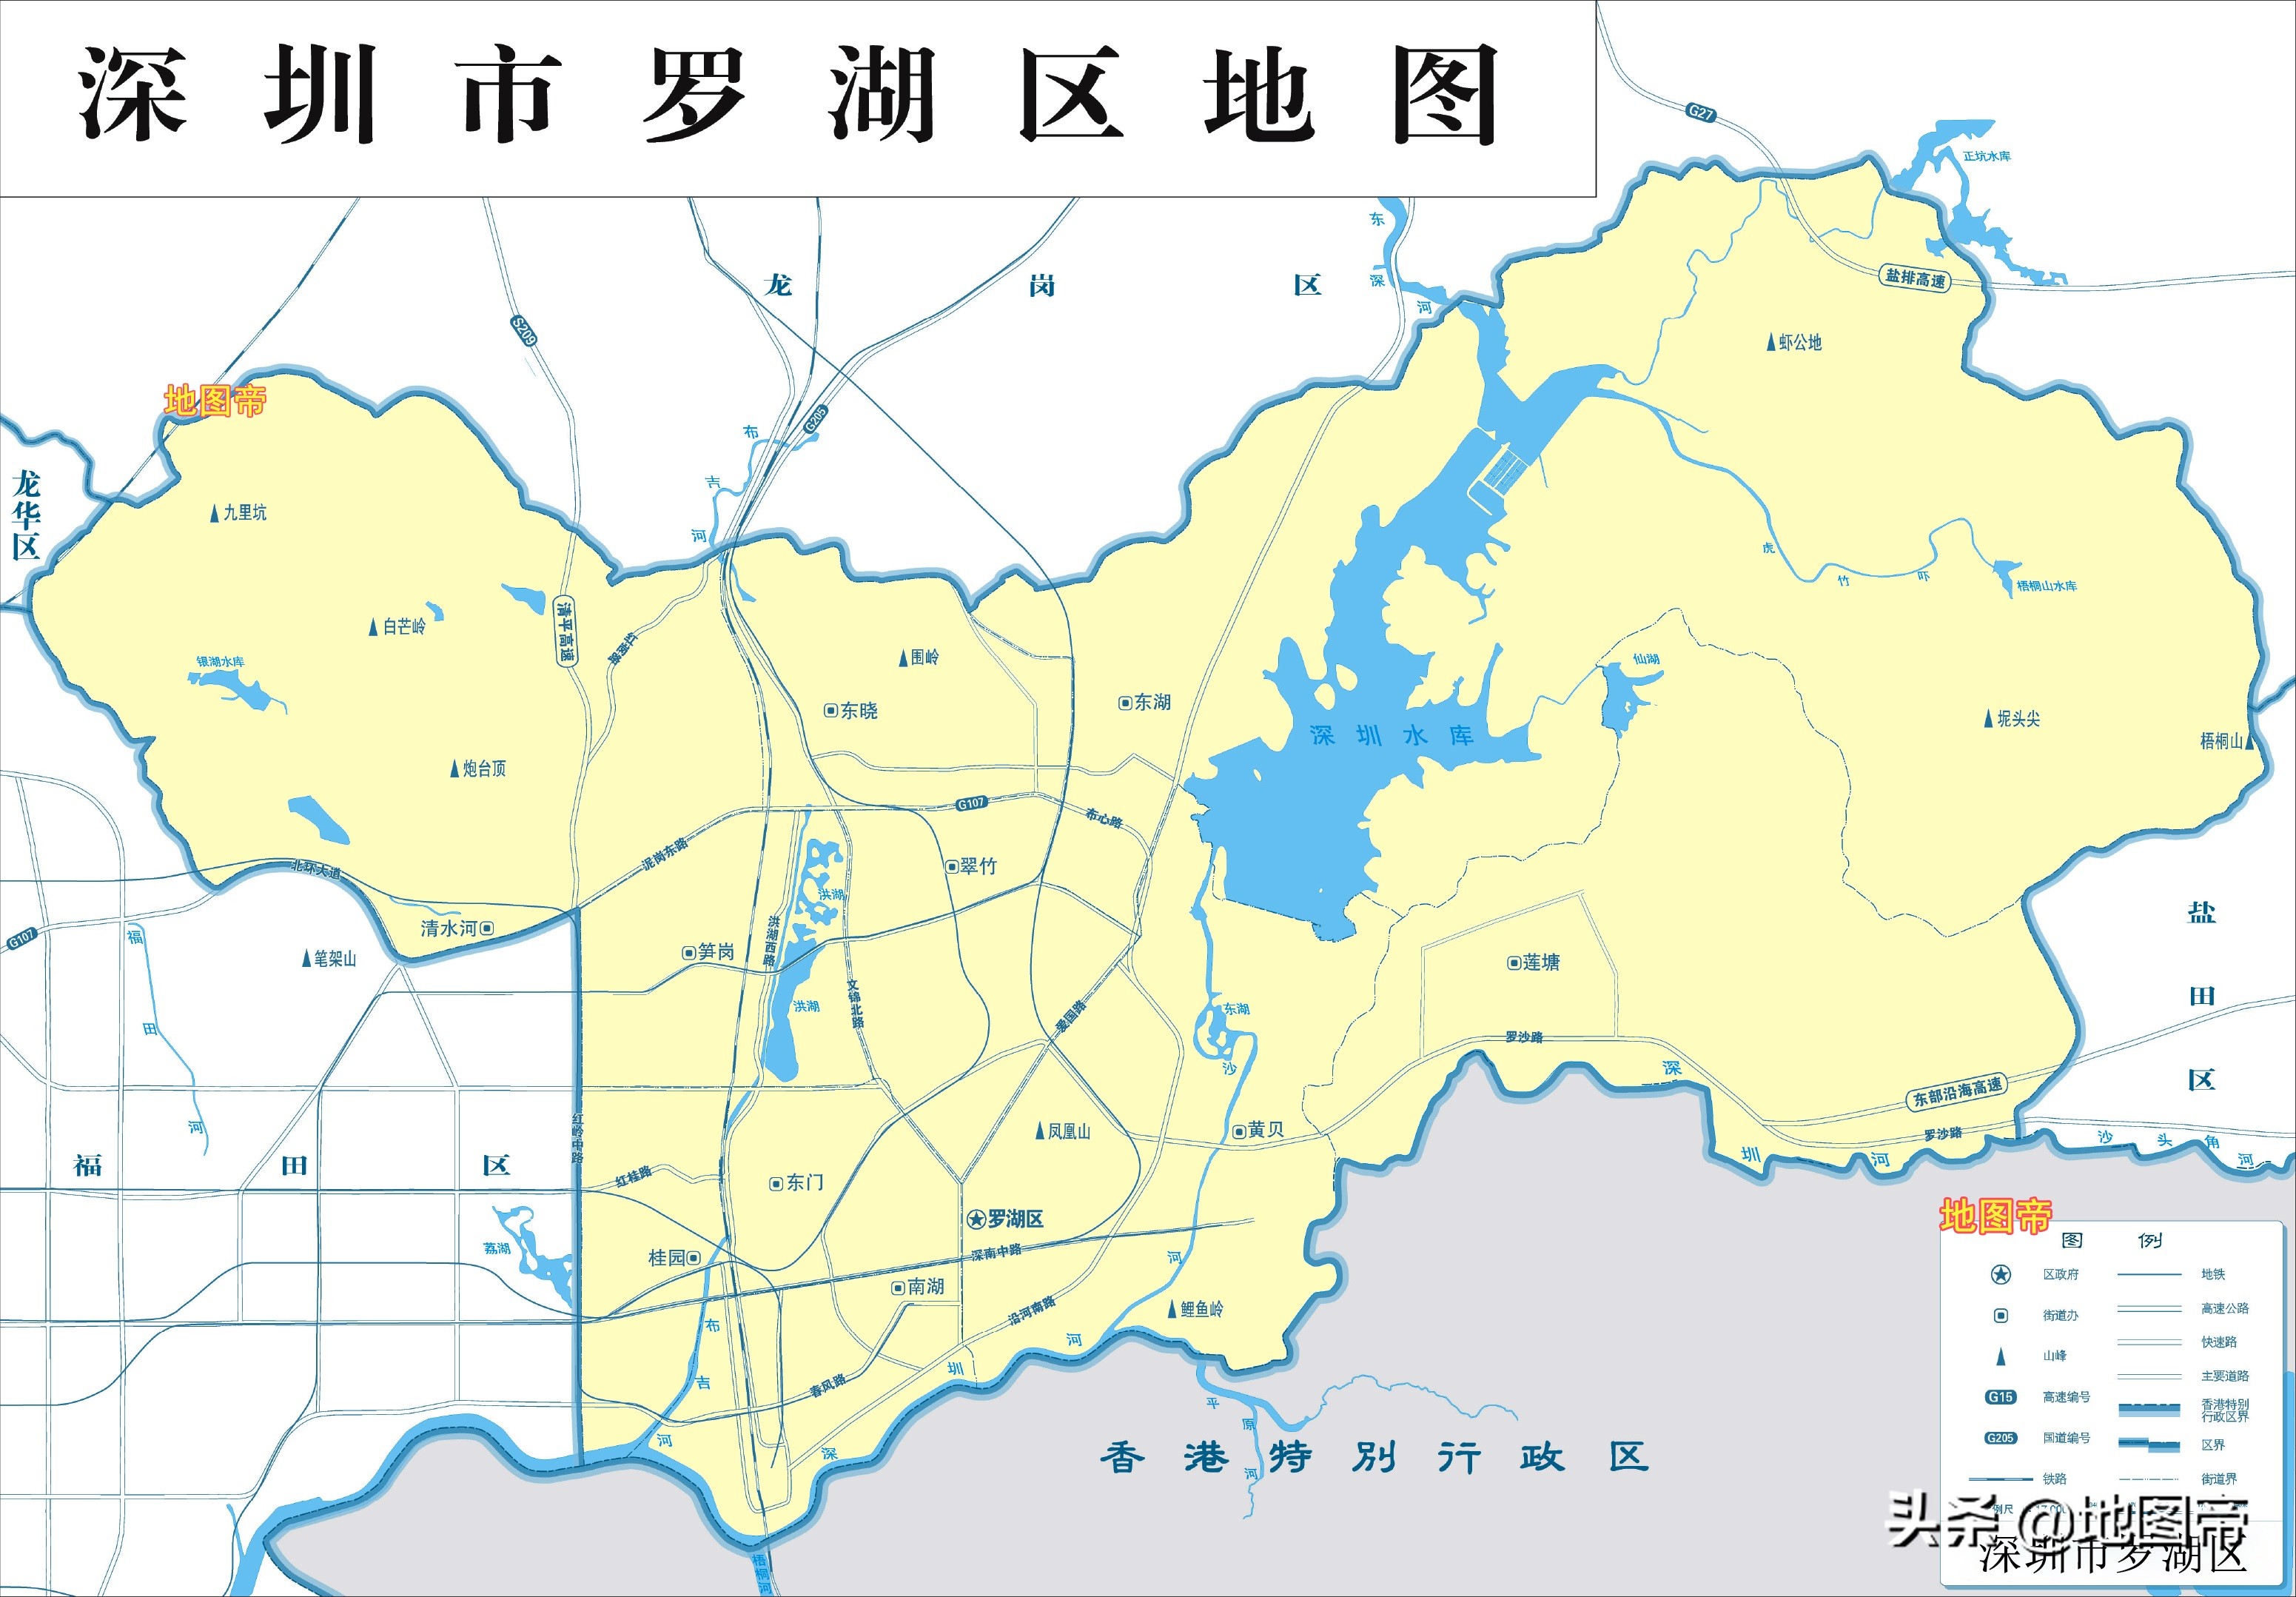 深圳市罗湖区地图,是深圳金融机构最多最密集的区